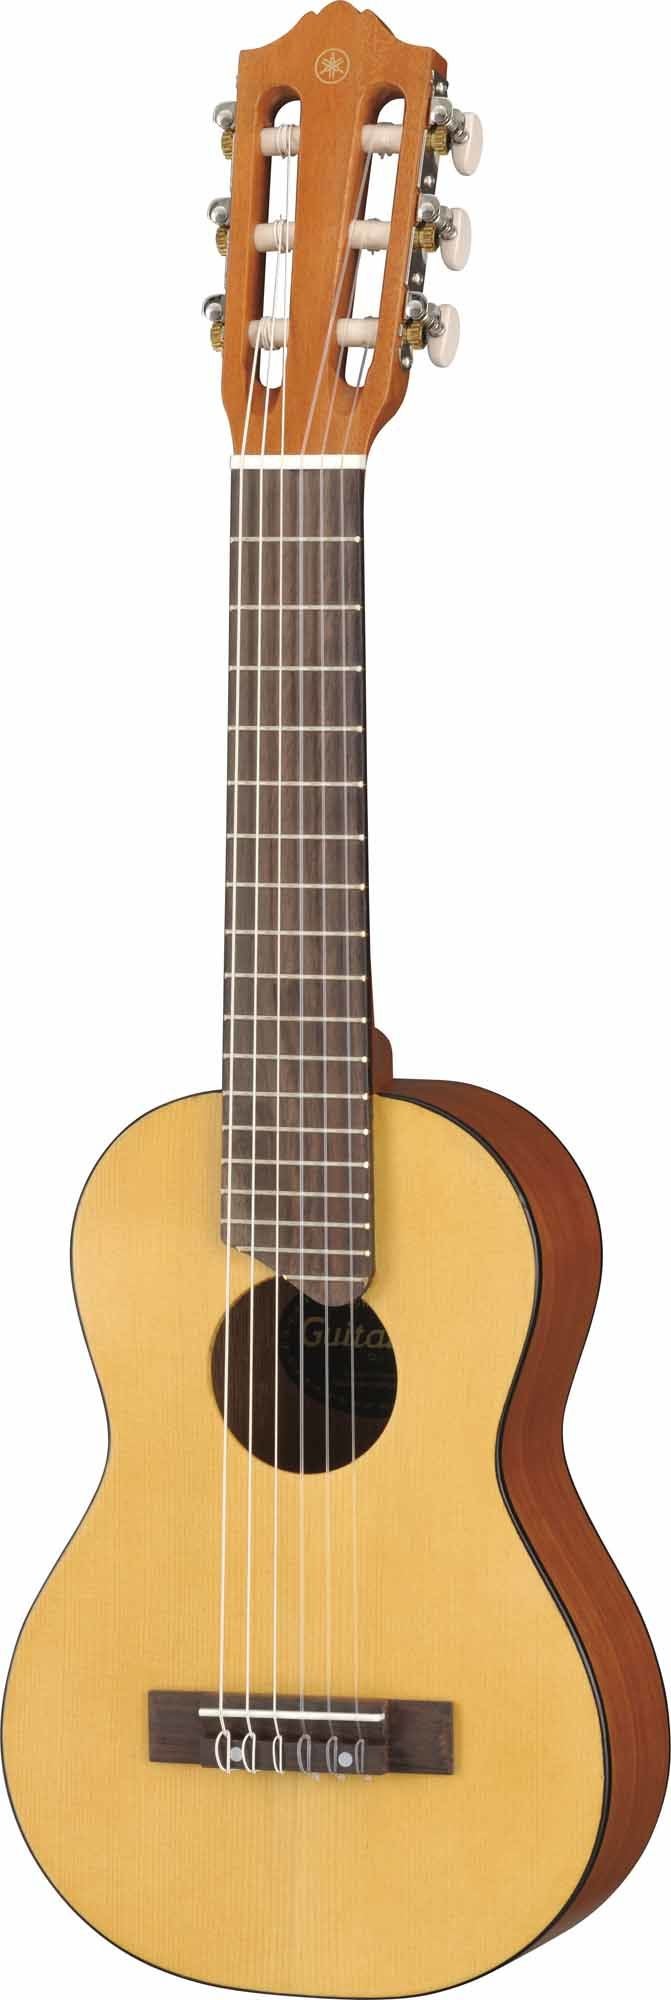 Yamaha Guitarlele, Holz von Yamaha